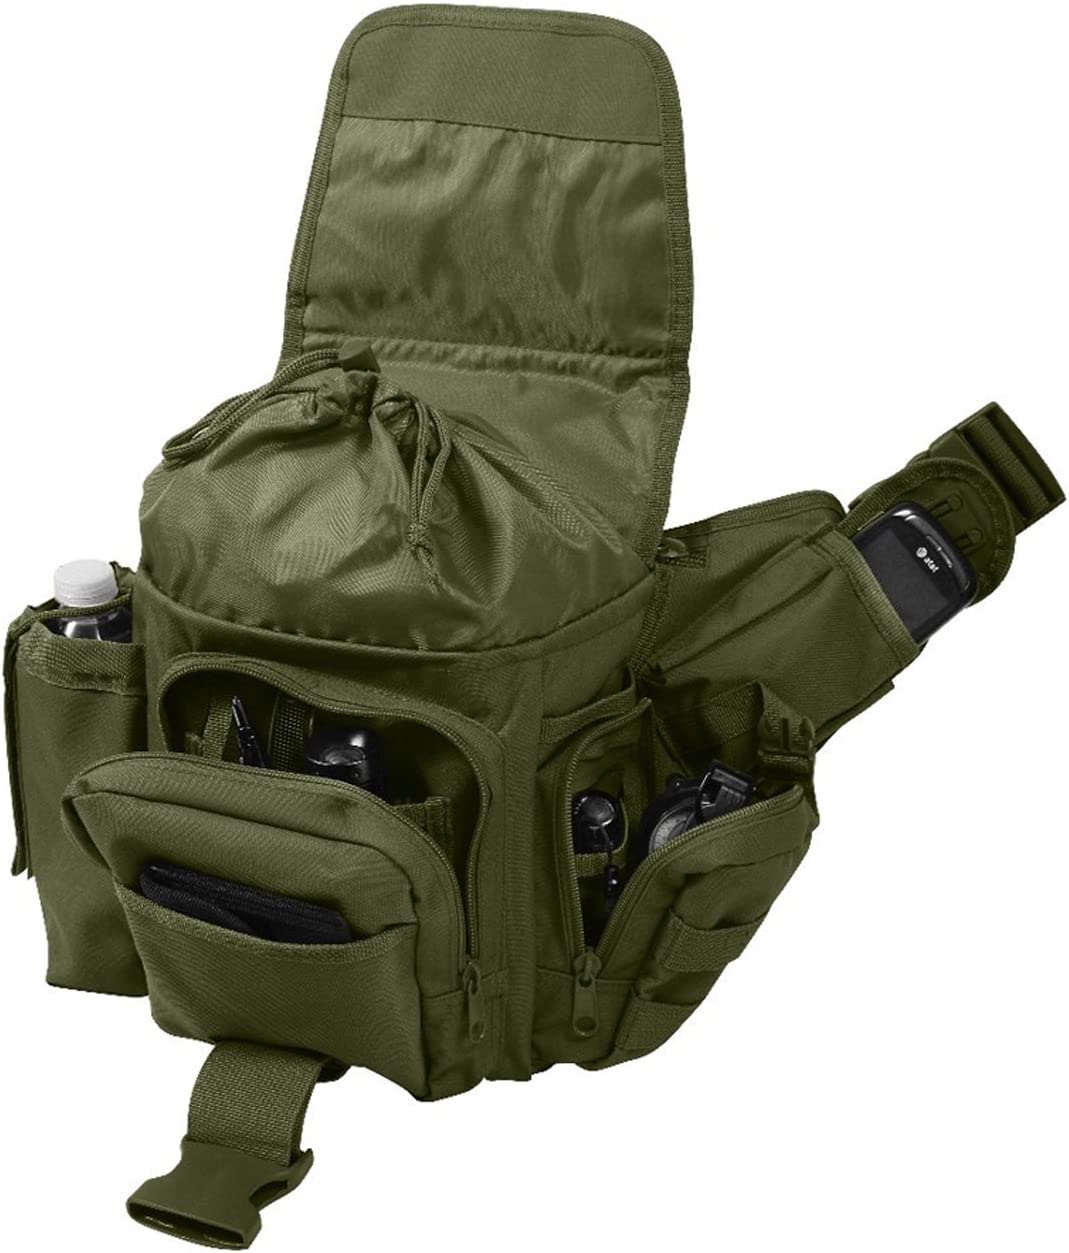 Rothco Advanced Tactical Bag, Olive Drab